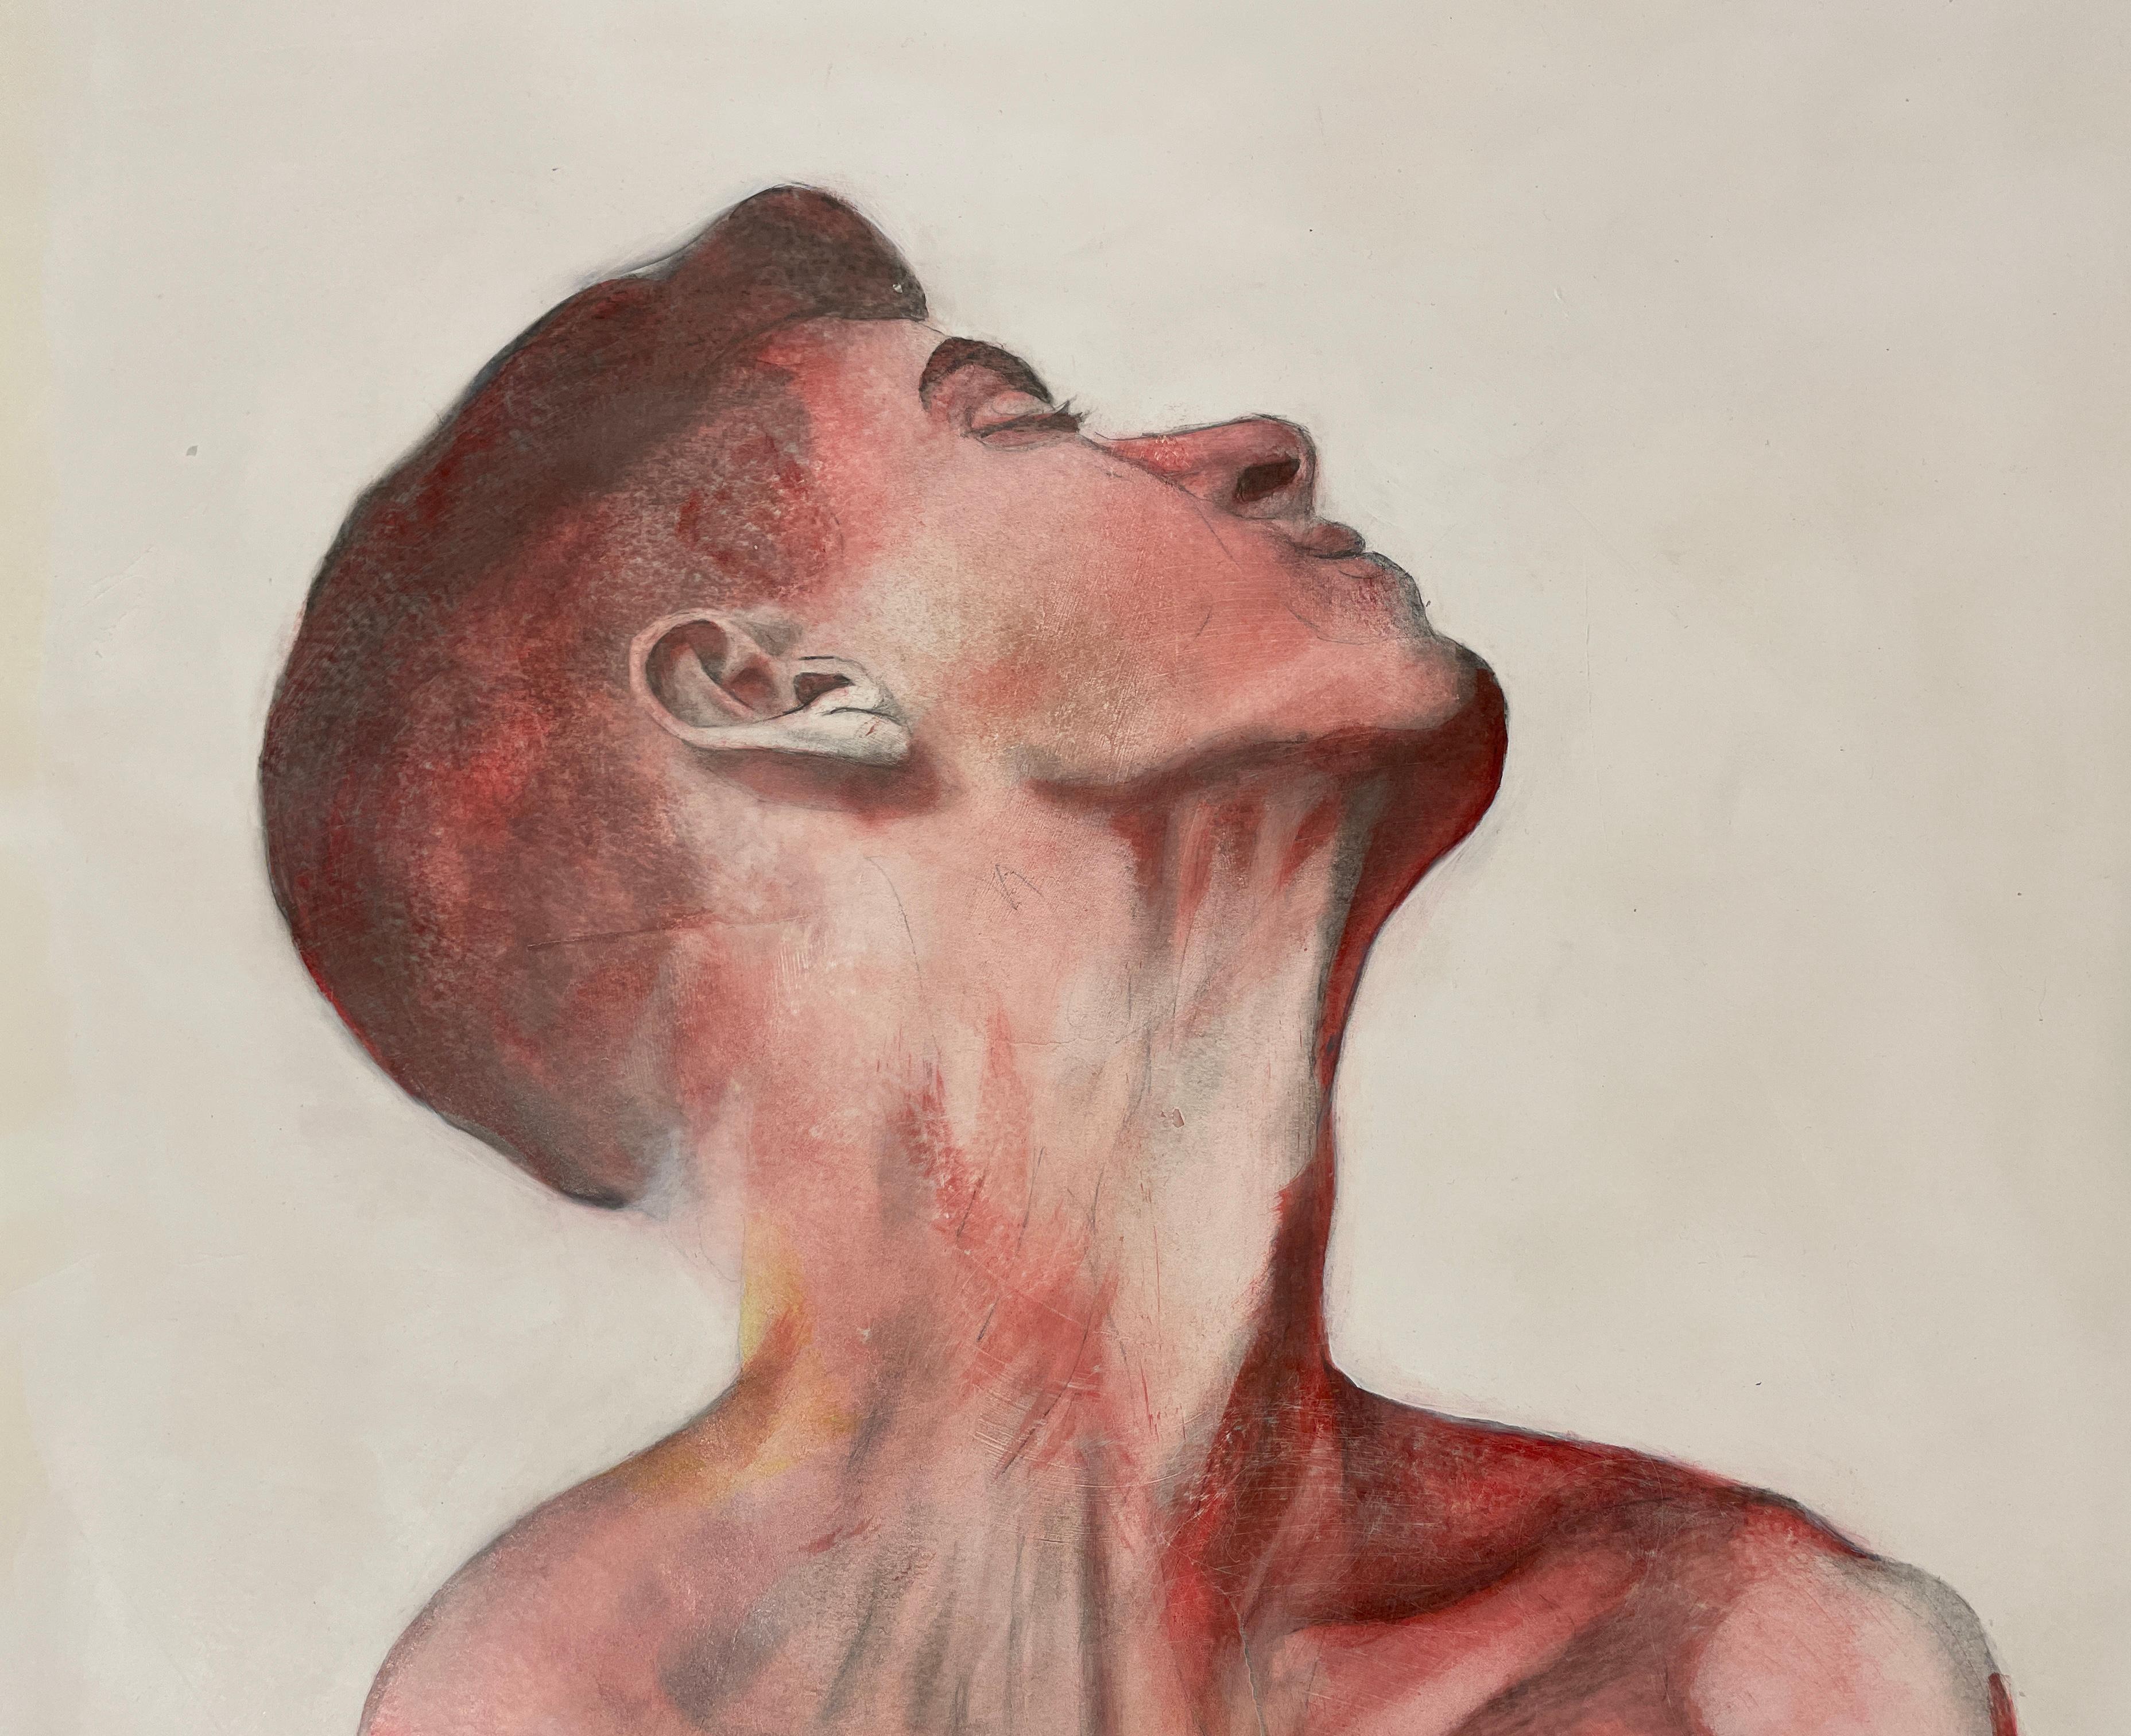  Fear of a Constantly Harrowed Heart - männlicher nackter Torso, Öl und Graphit auf Papier – Art von Rick Sindt